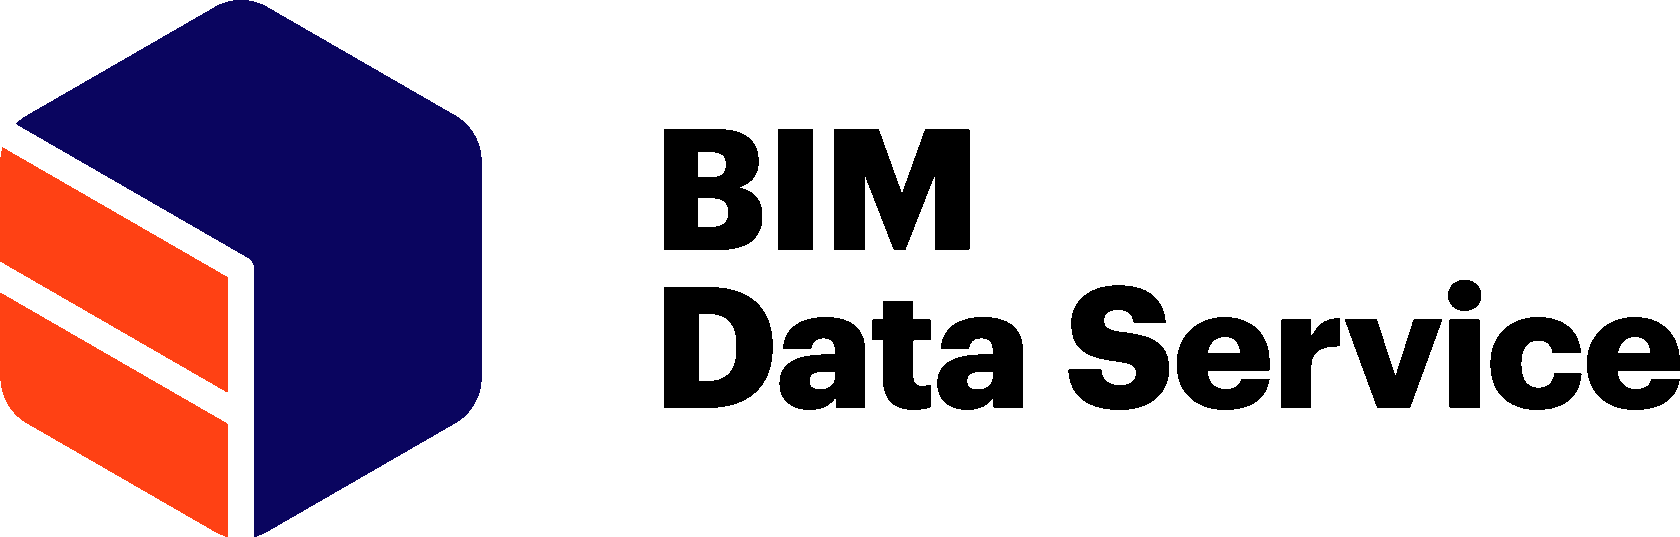 BIM Data Service